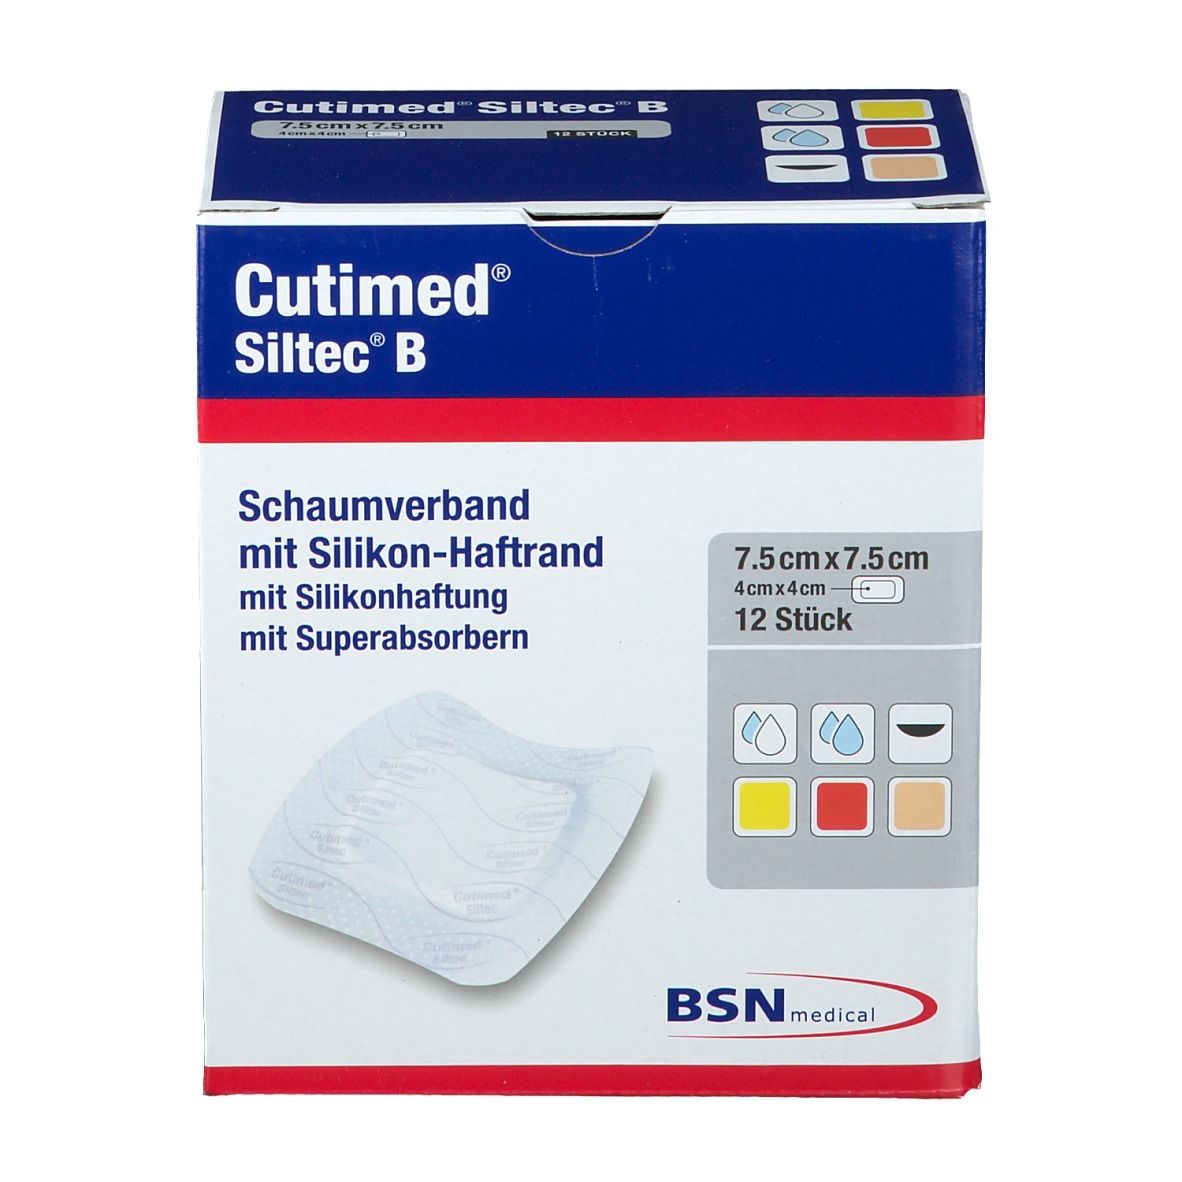 Cutimed® Siltec B 7,5 cm x 7,5 cm